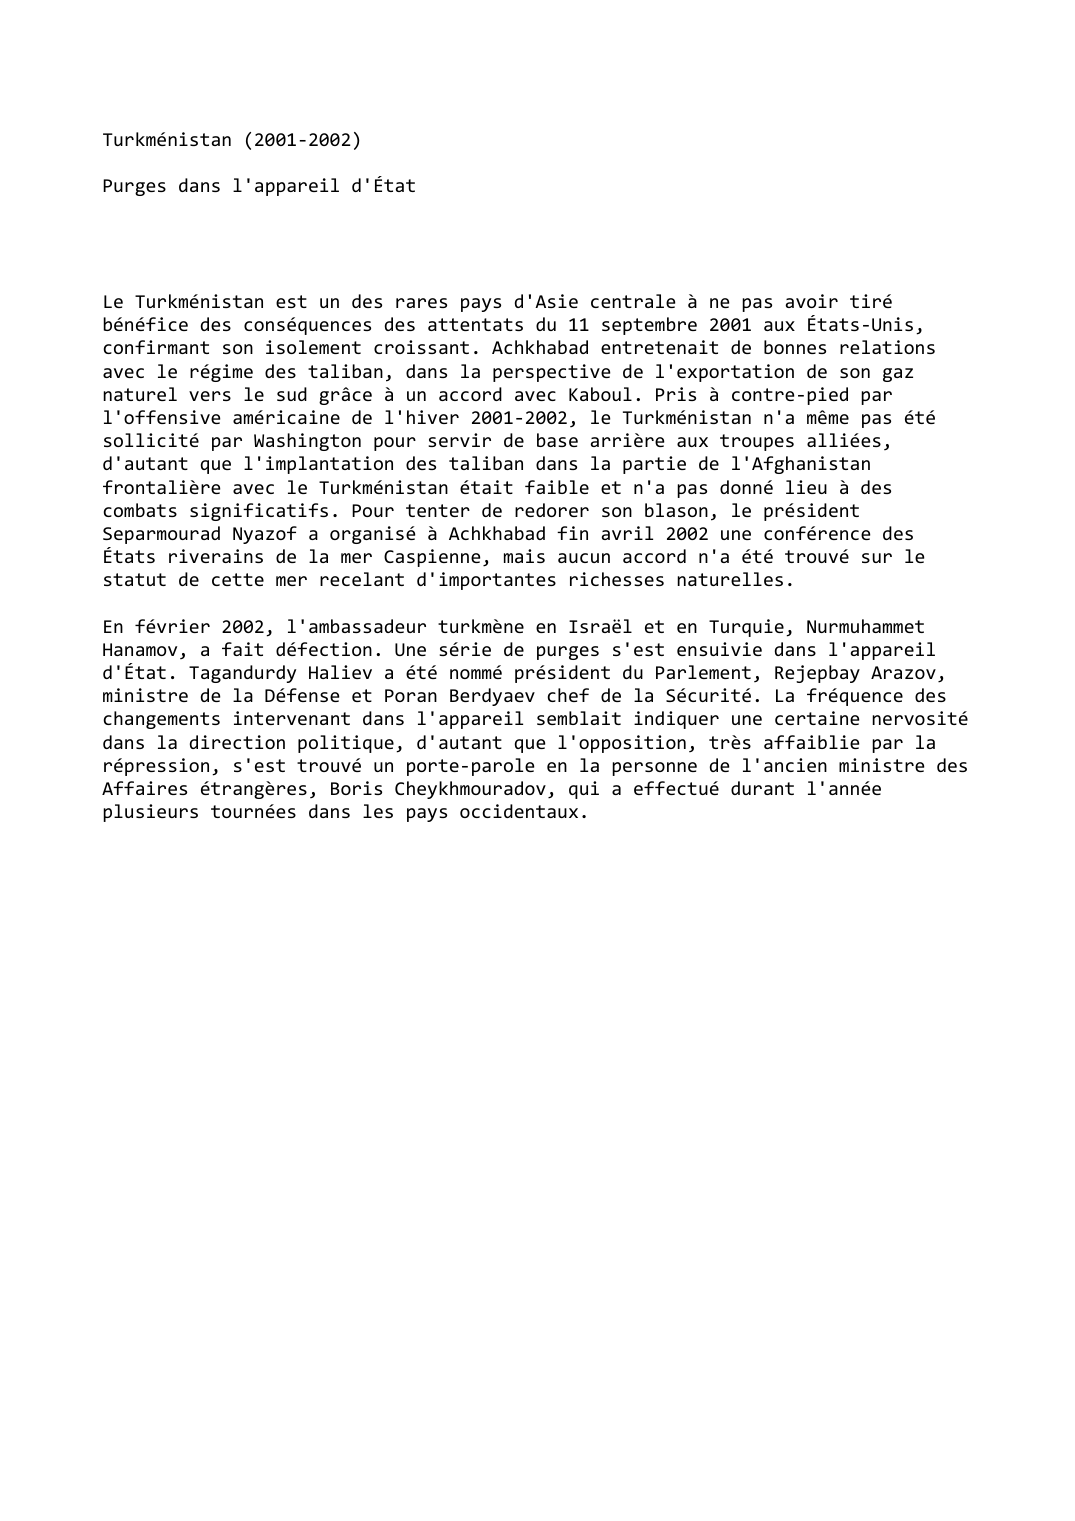 Prévisualisation du document Turkménistan (2001-2002)

Purges dans l'appareil d'État